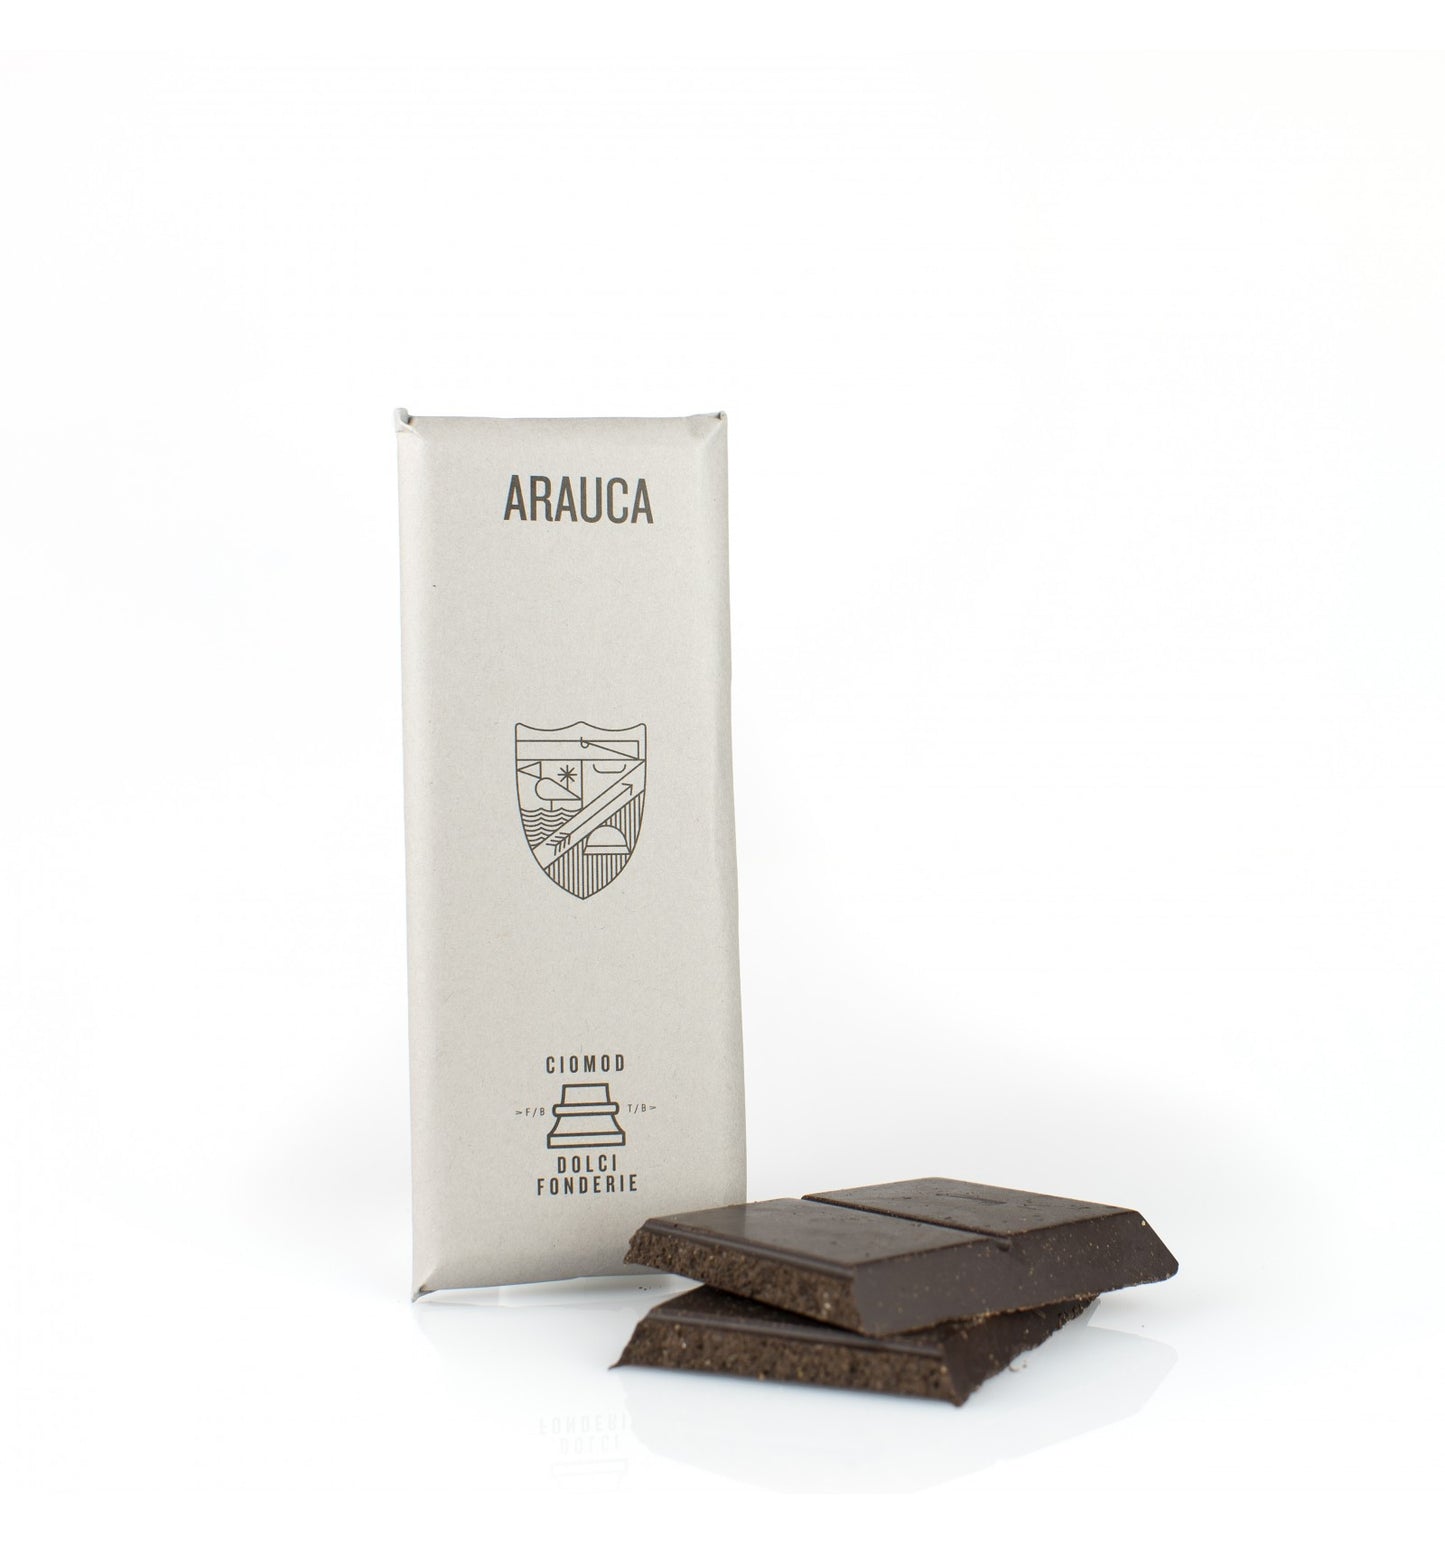 Cioccolato di Modica Igp Arauca - Ciomod